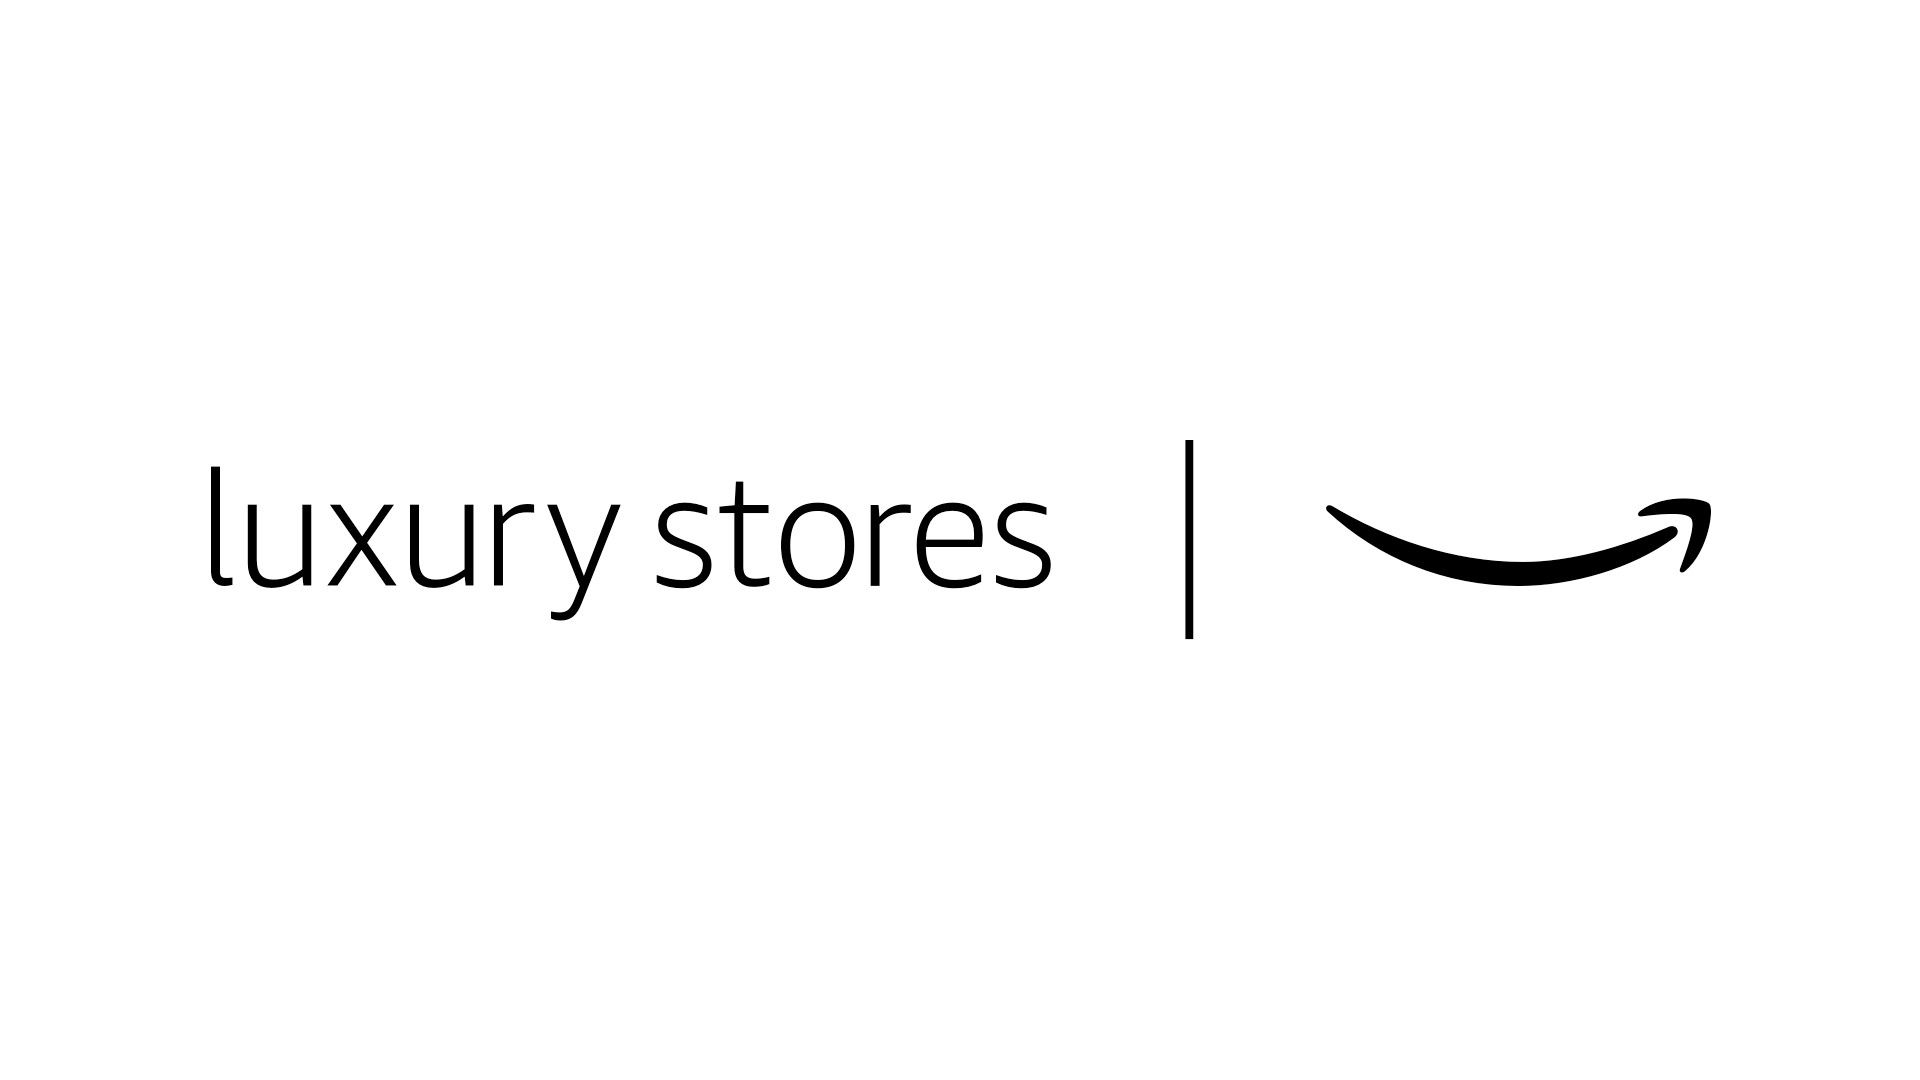 Amazon Luxury Stores